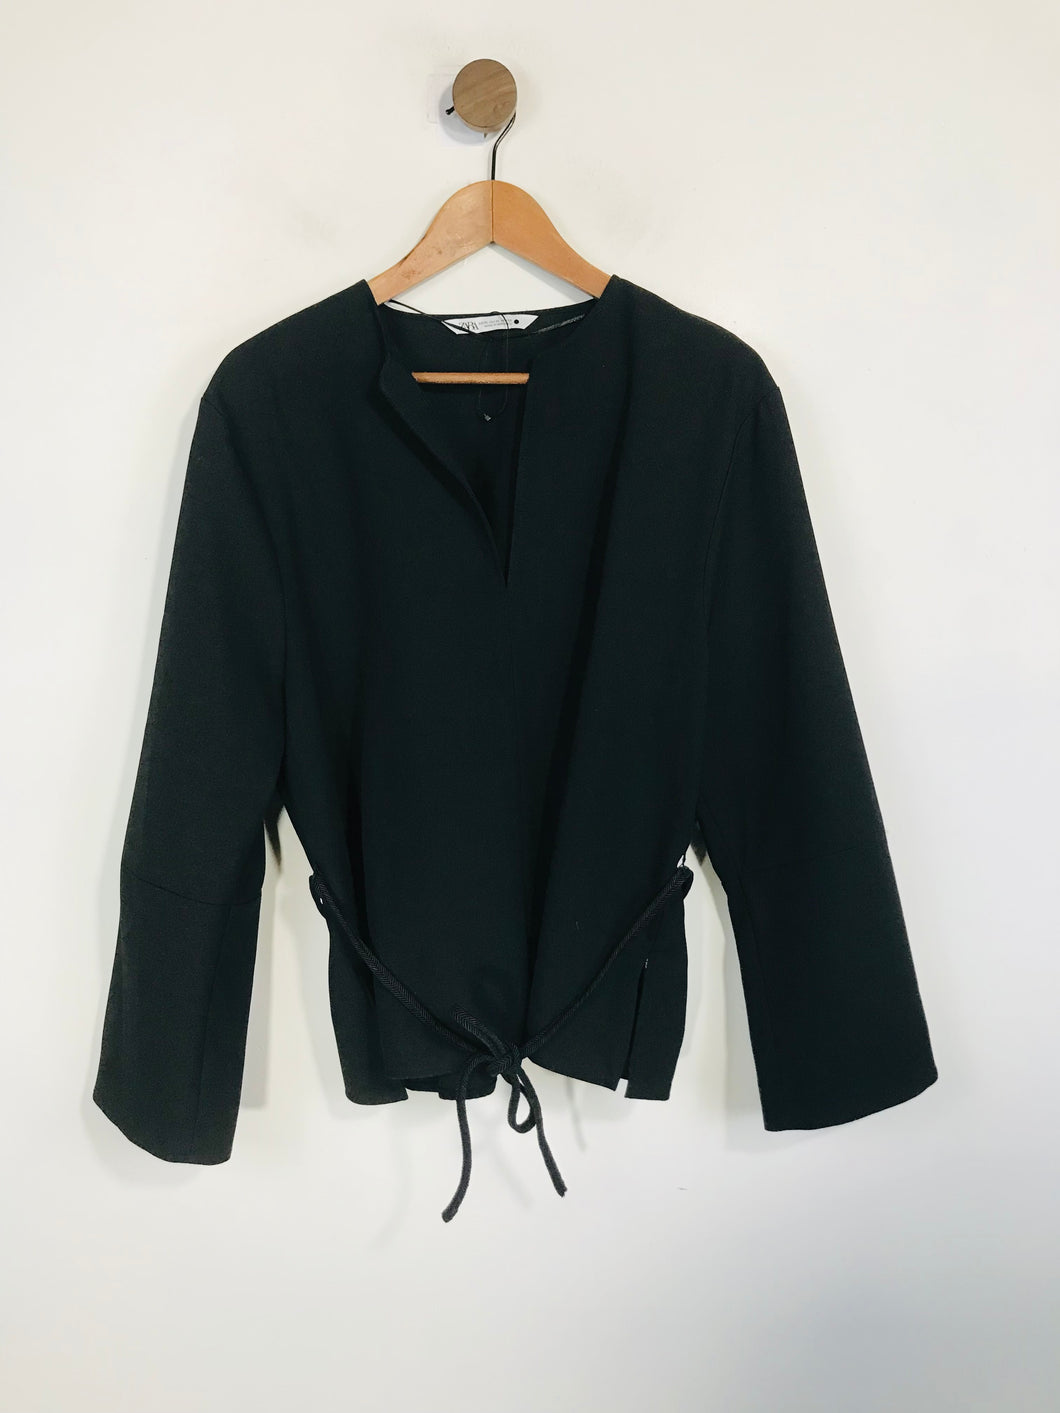 Zara Women's Belted Blouse | XL UK16 | Black